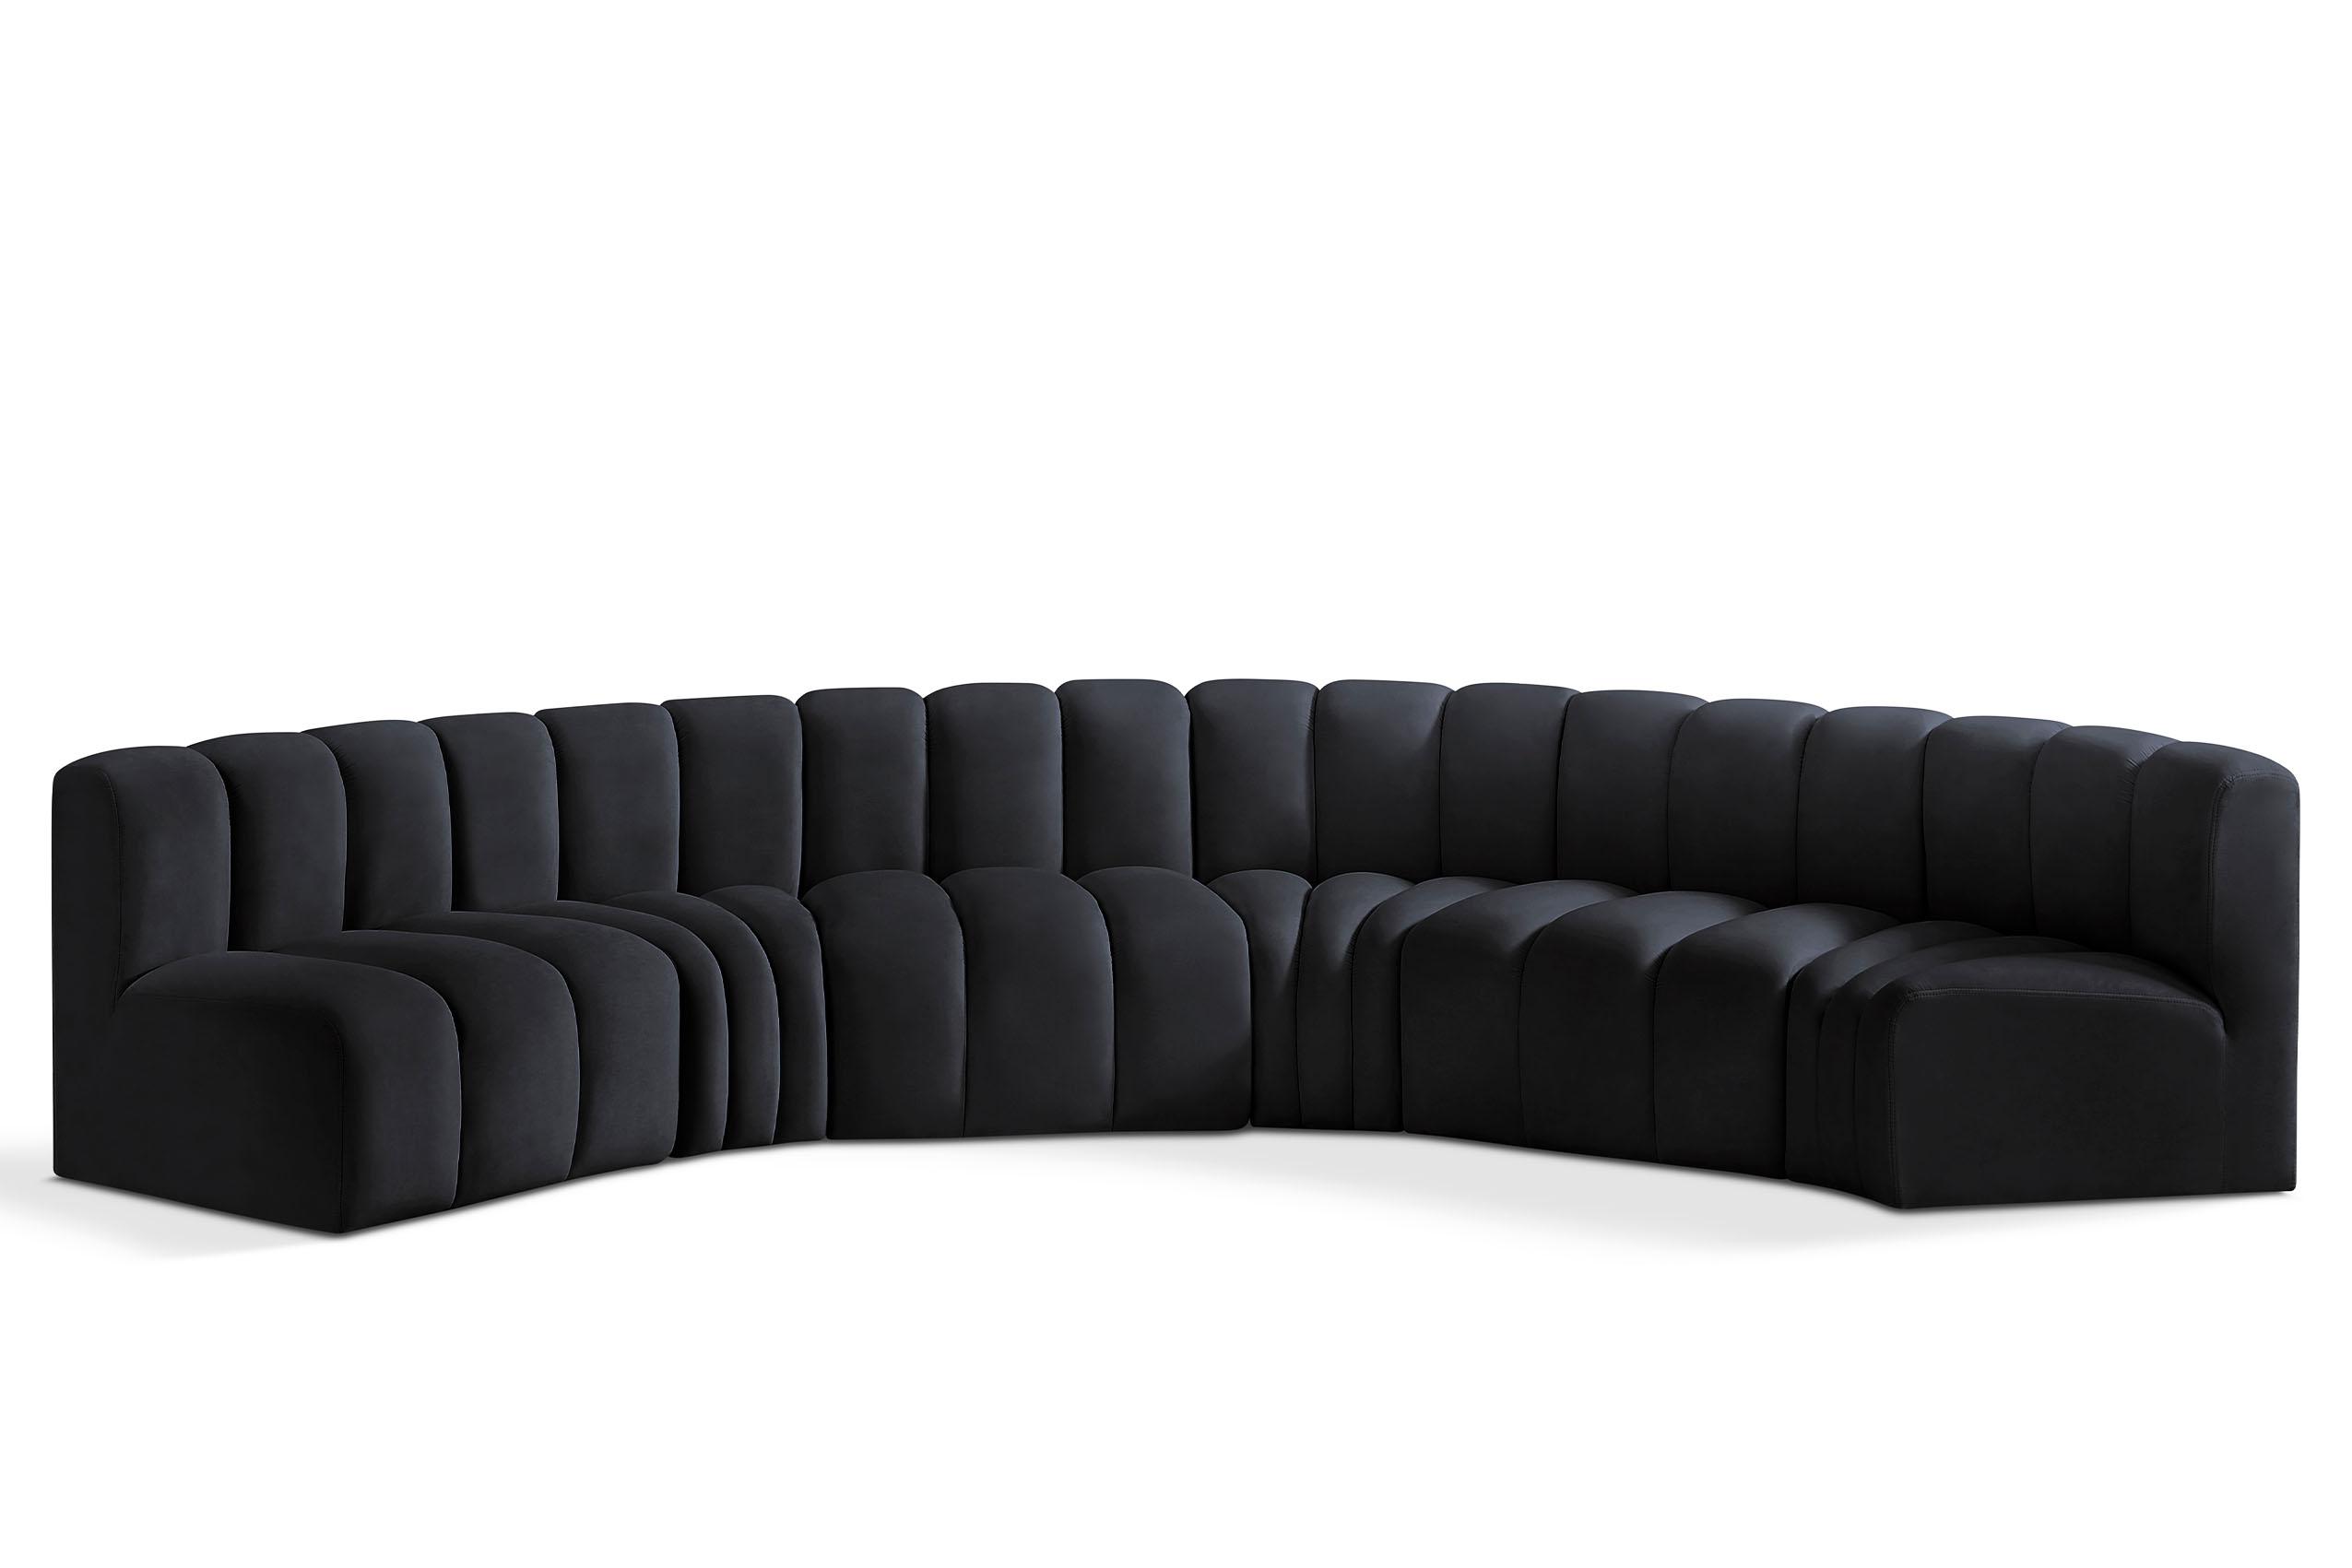 Contemporary, Modern Modular Sectional Sofa ARC 103Black-S6B 103Black-S6B in Black Velvet